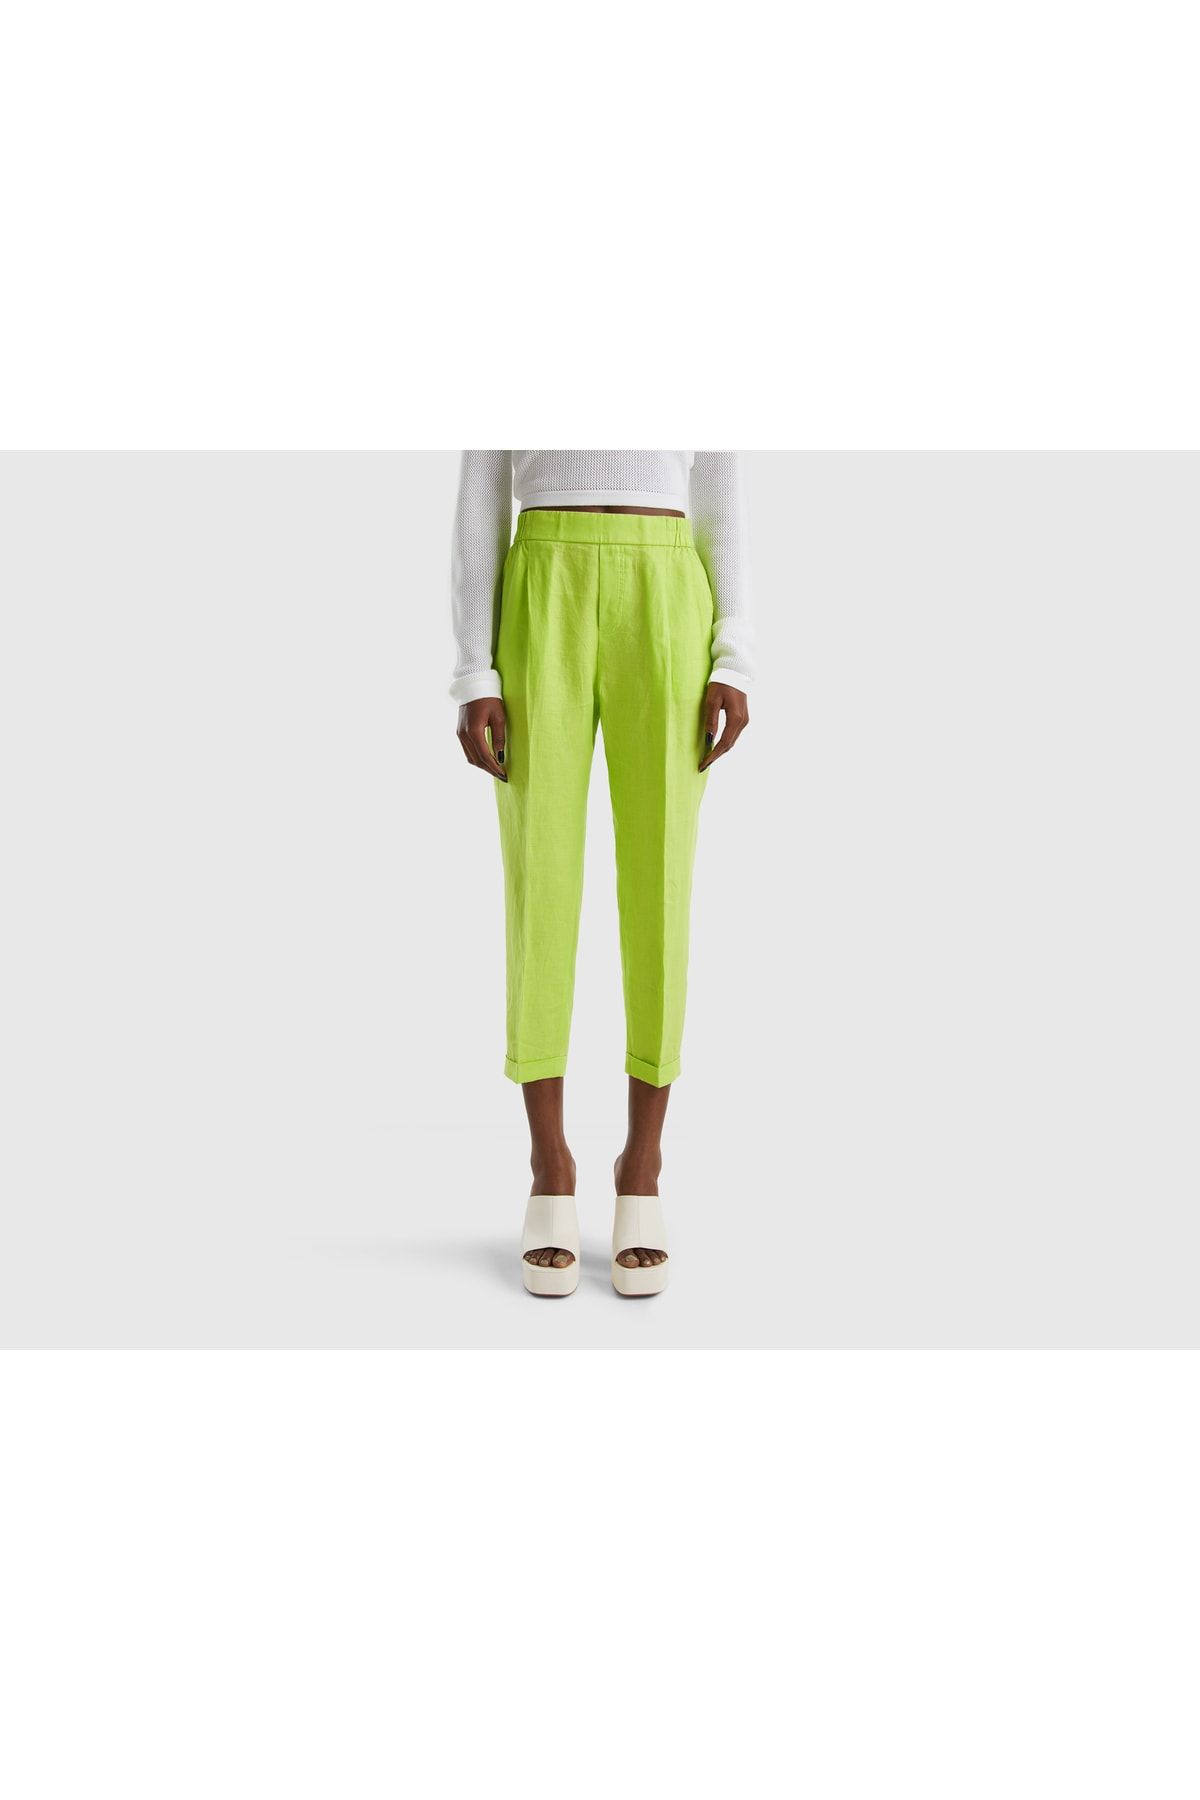 United Colors of Benetton Kadın Açık Yeşil Beli Lastikli Keten Pantolon Lime Rengi